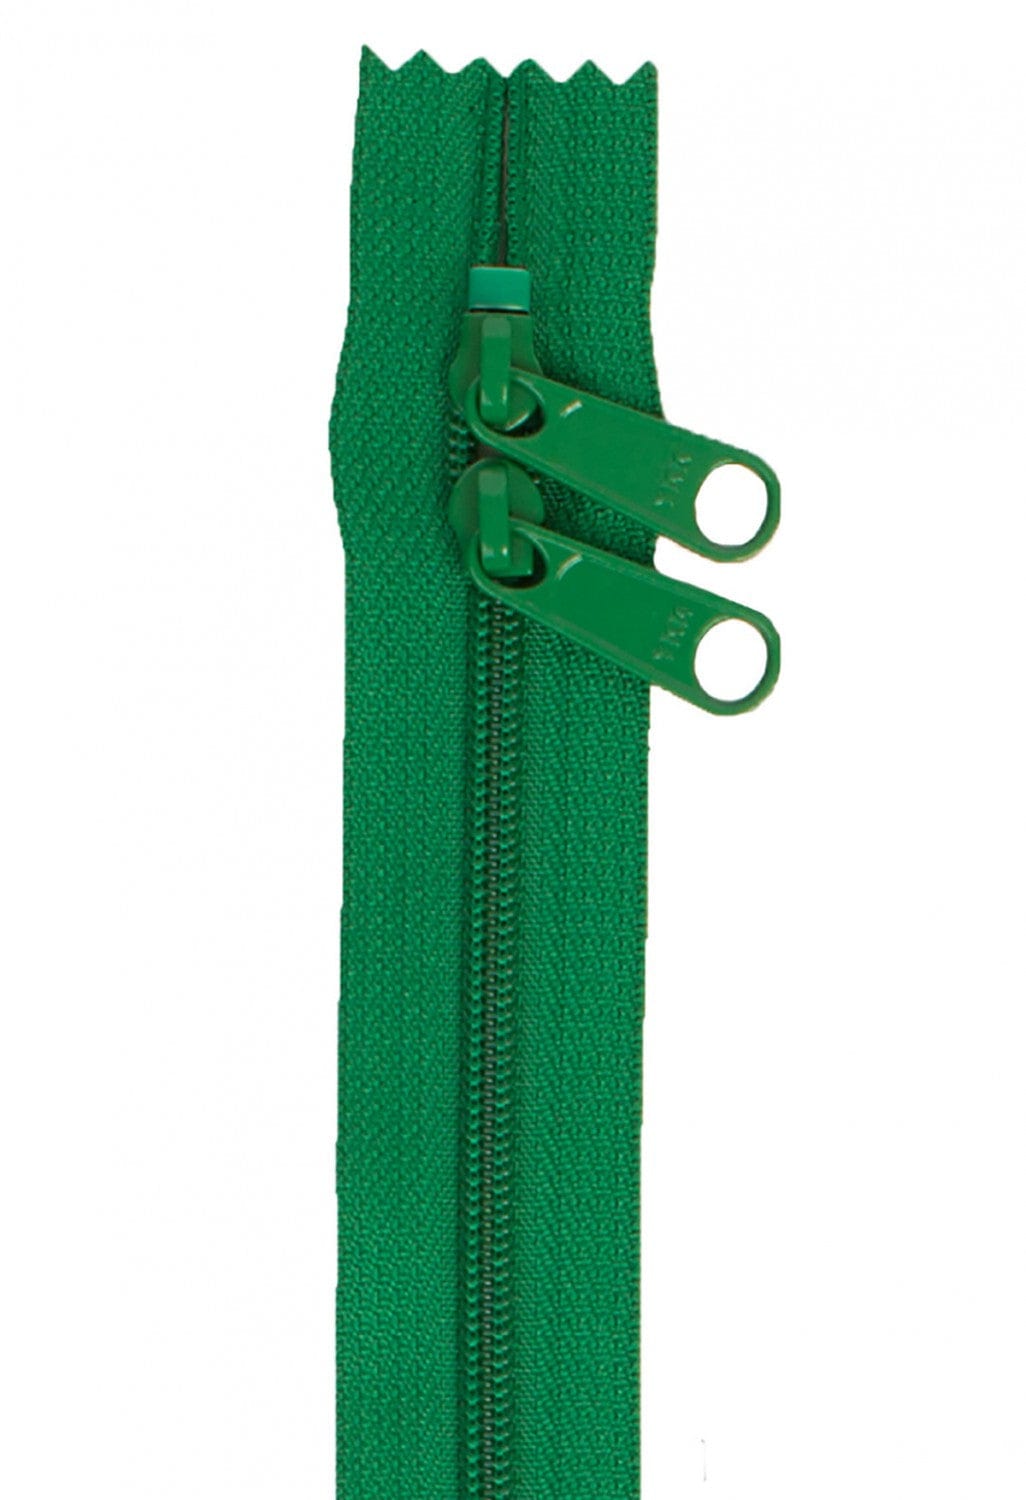 30" Double Slide Handbag Zipper in Jewel Green